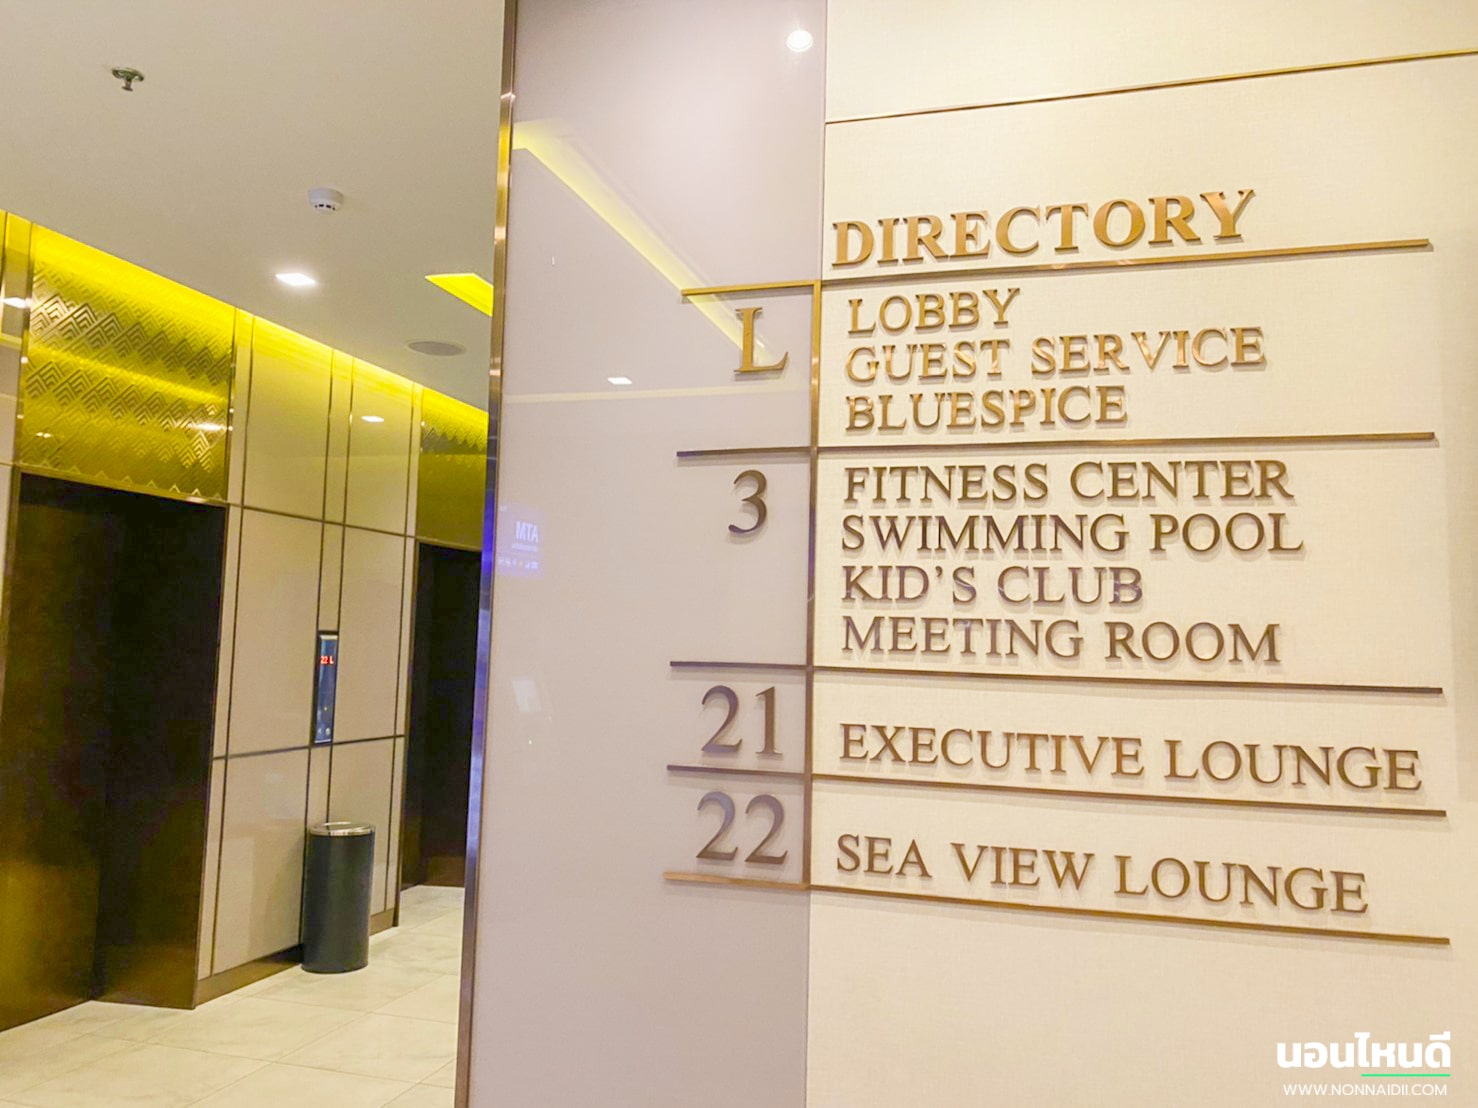 รีวิว!! Centre Point Prime Hotel Pattaya นอนโรงแรม 4.5 ดาว วิวทะเล จ่ายแค่ 739 บาท!